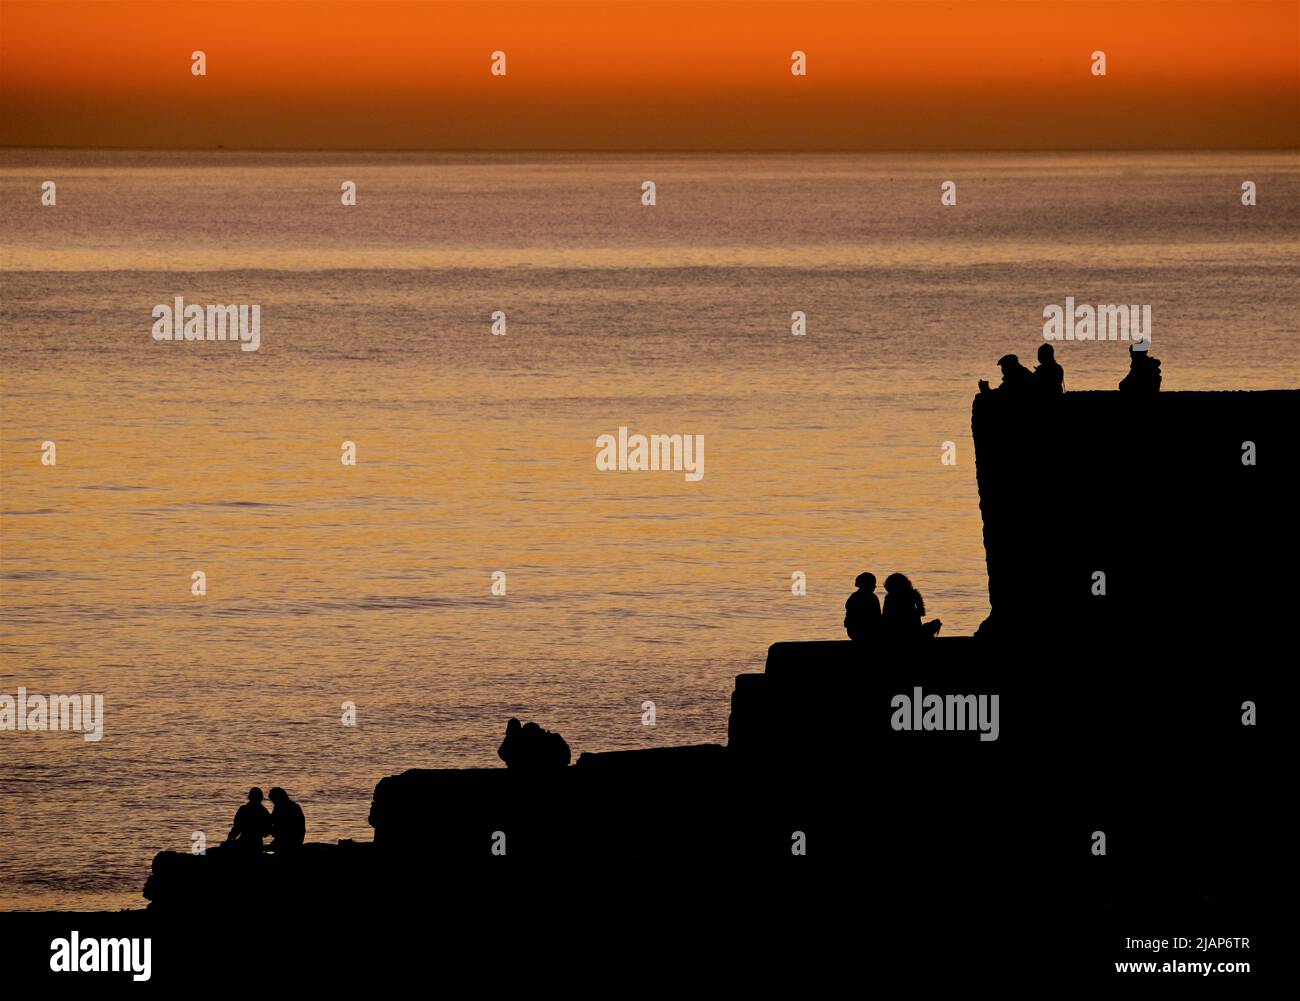 Silhoueted formes de personnes assises et debout sur une groyne sur Brighton Beach, après avoir regardé le coucher du soleil. Le ciel s'éveille avec la lumière du jour. Brighton, Angleterre, Royaume-Uni Banque D'Images